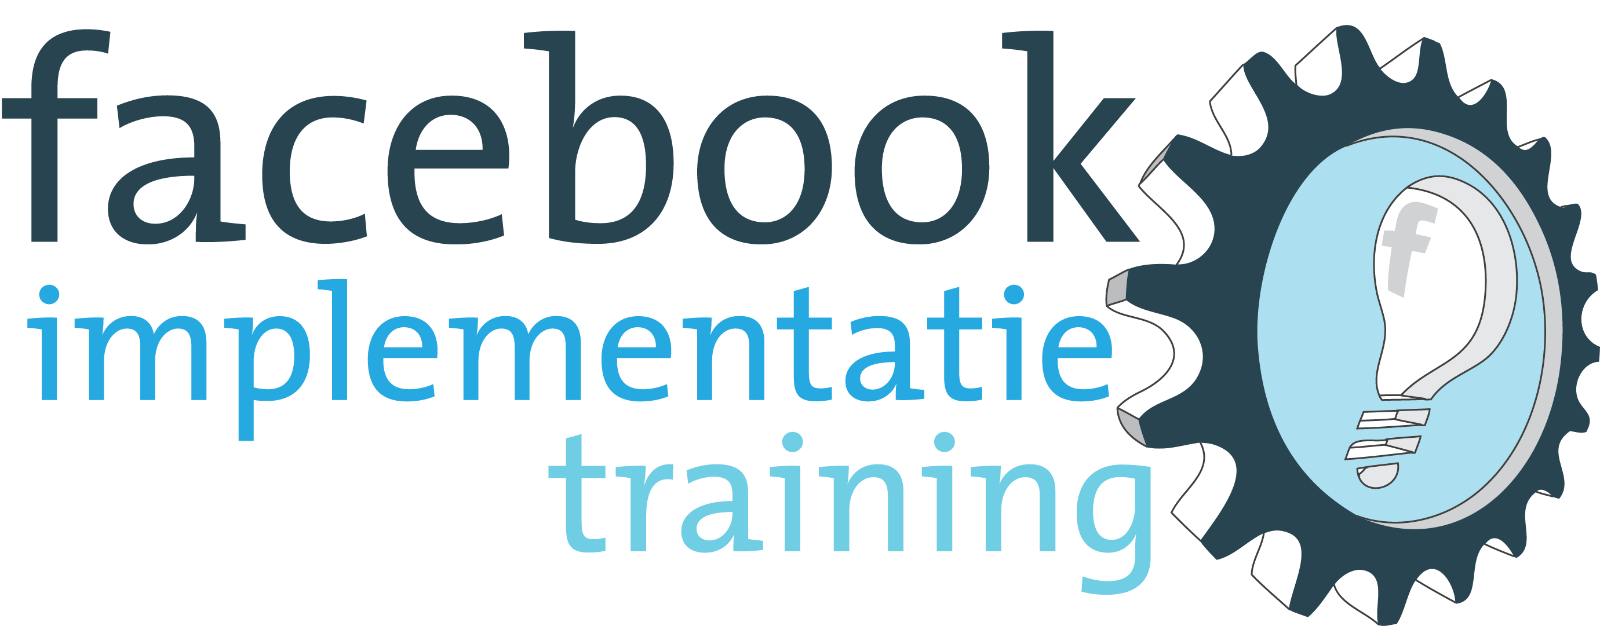 Facebook Implementatietraining 3 februari 2016